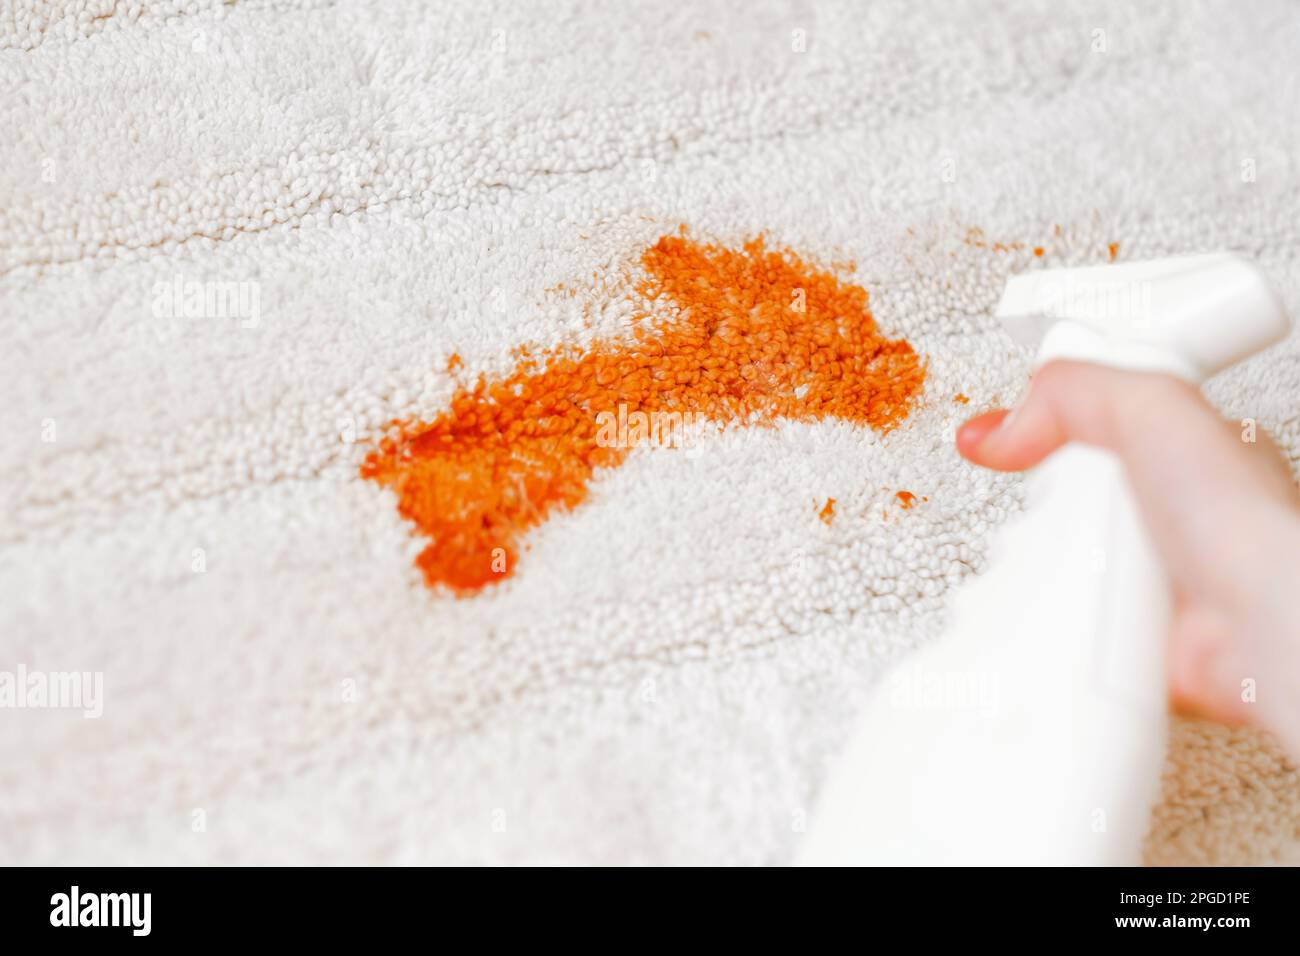 Ketchup-Fleck auf einem weißen Teppich in Innenräumen. Reinigung mit einem  Spray. Nahaufnahme. Das Konzept der täglichen Fleckenentfernung  Stockfotografie - Alamy